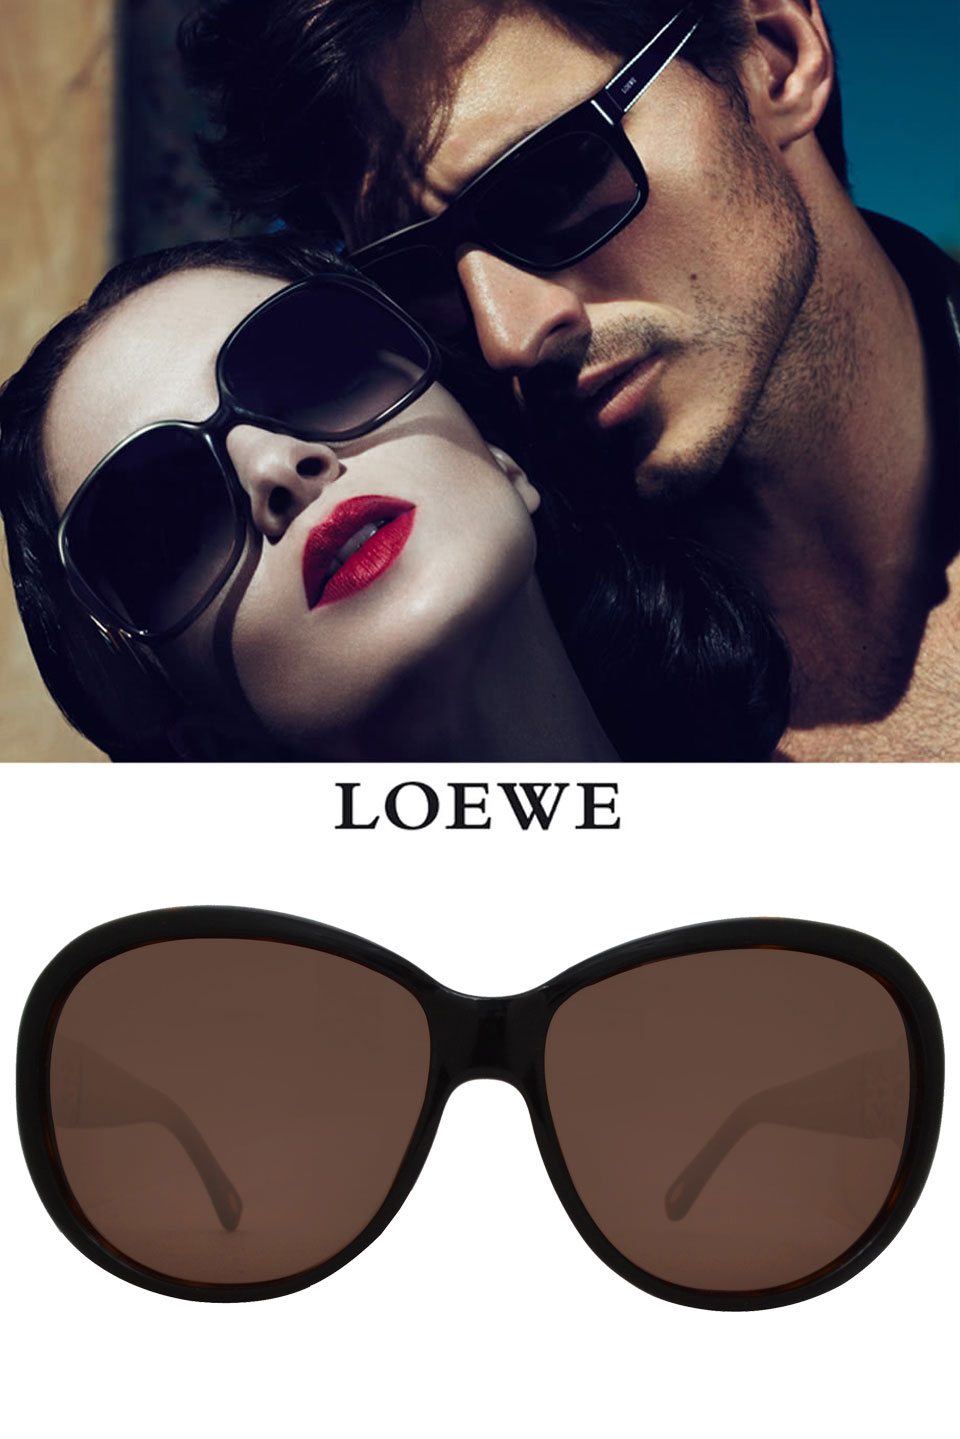 LOEWE 羅威 西班牙羅威經典標誌款太陽眼鏡(深咖啡/金 